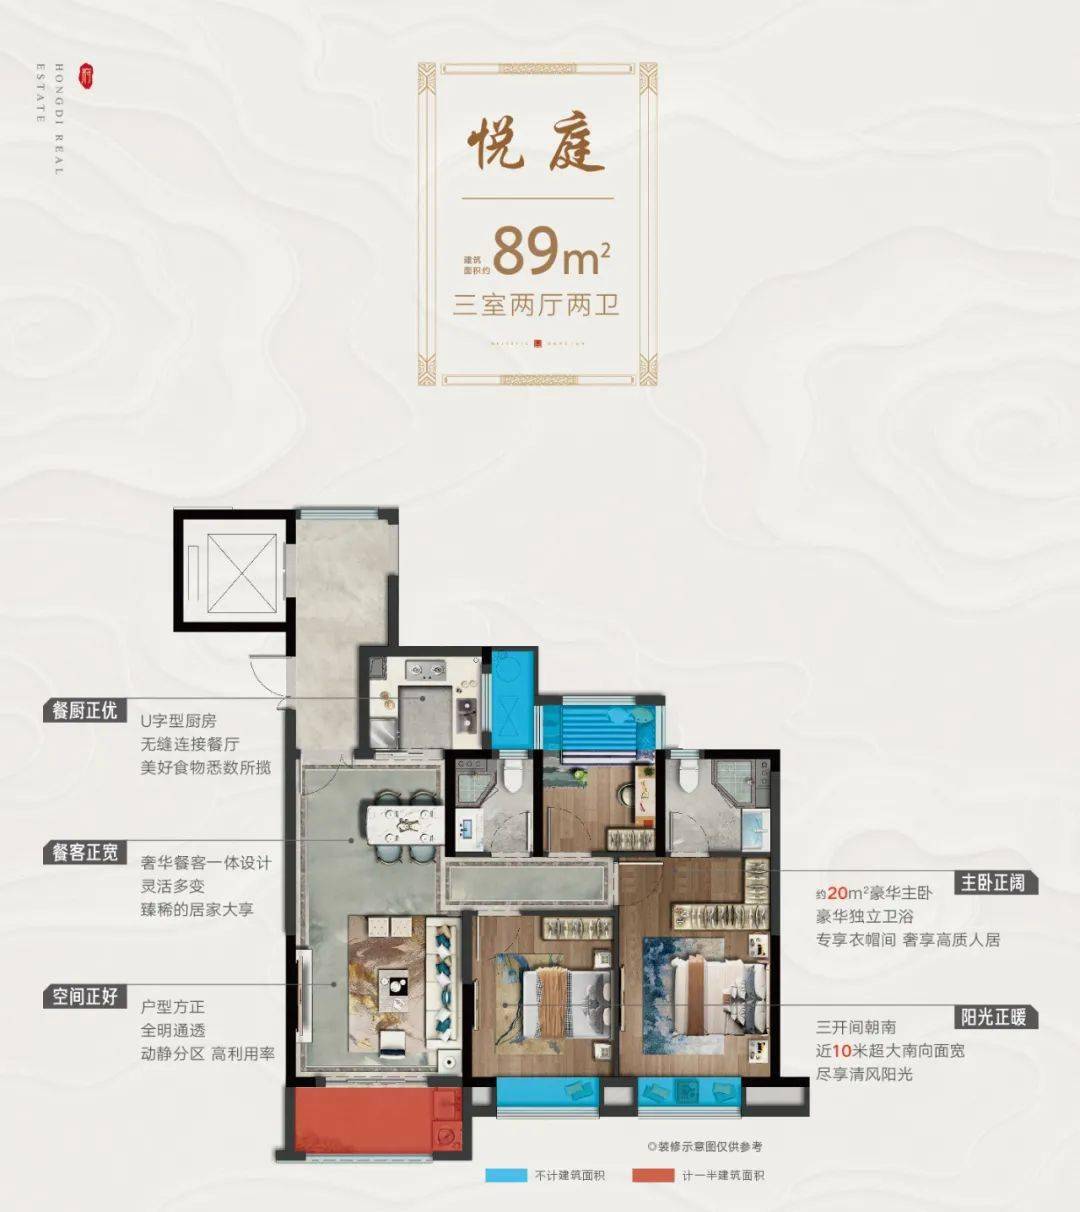 宏地首府建面约89-141㎡墅境高层,满足不同客户的购房需求.